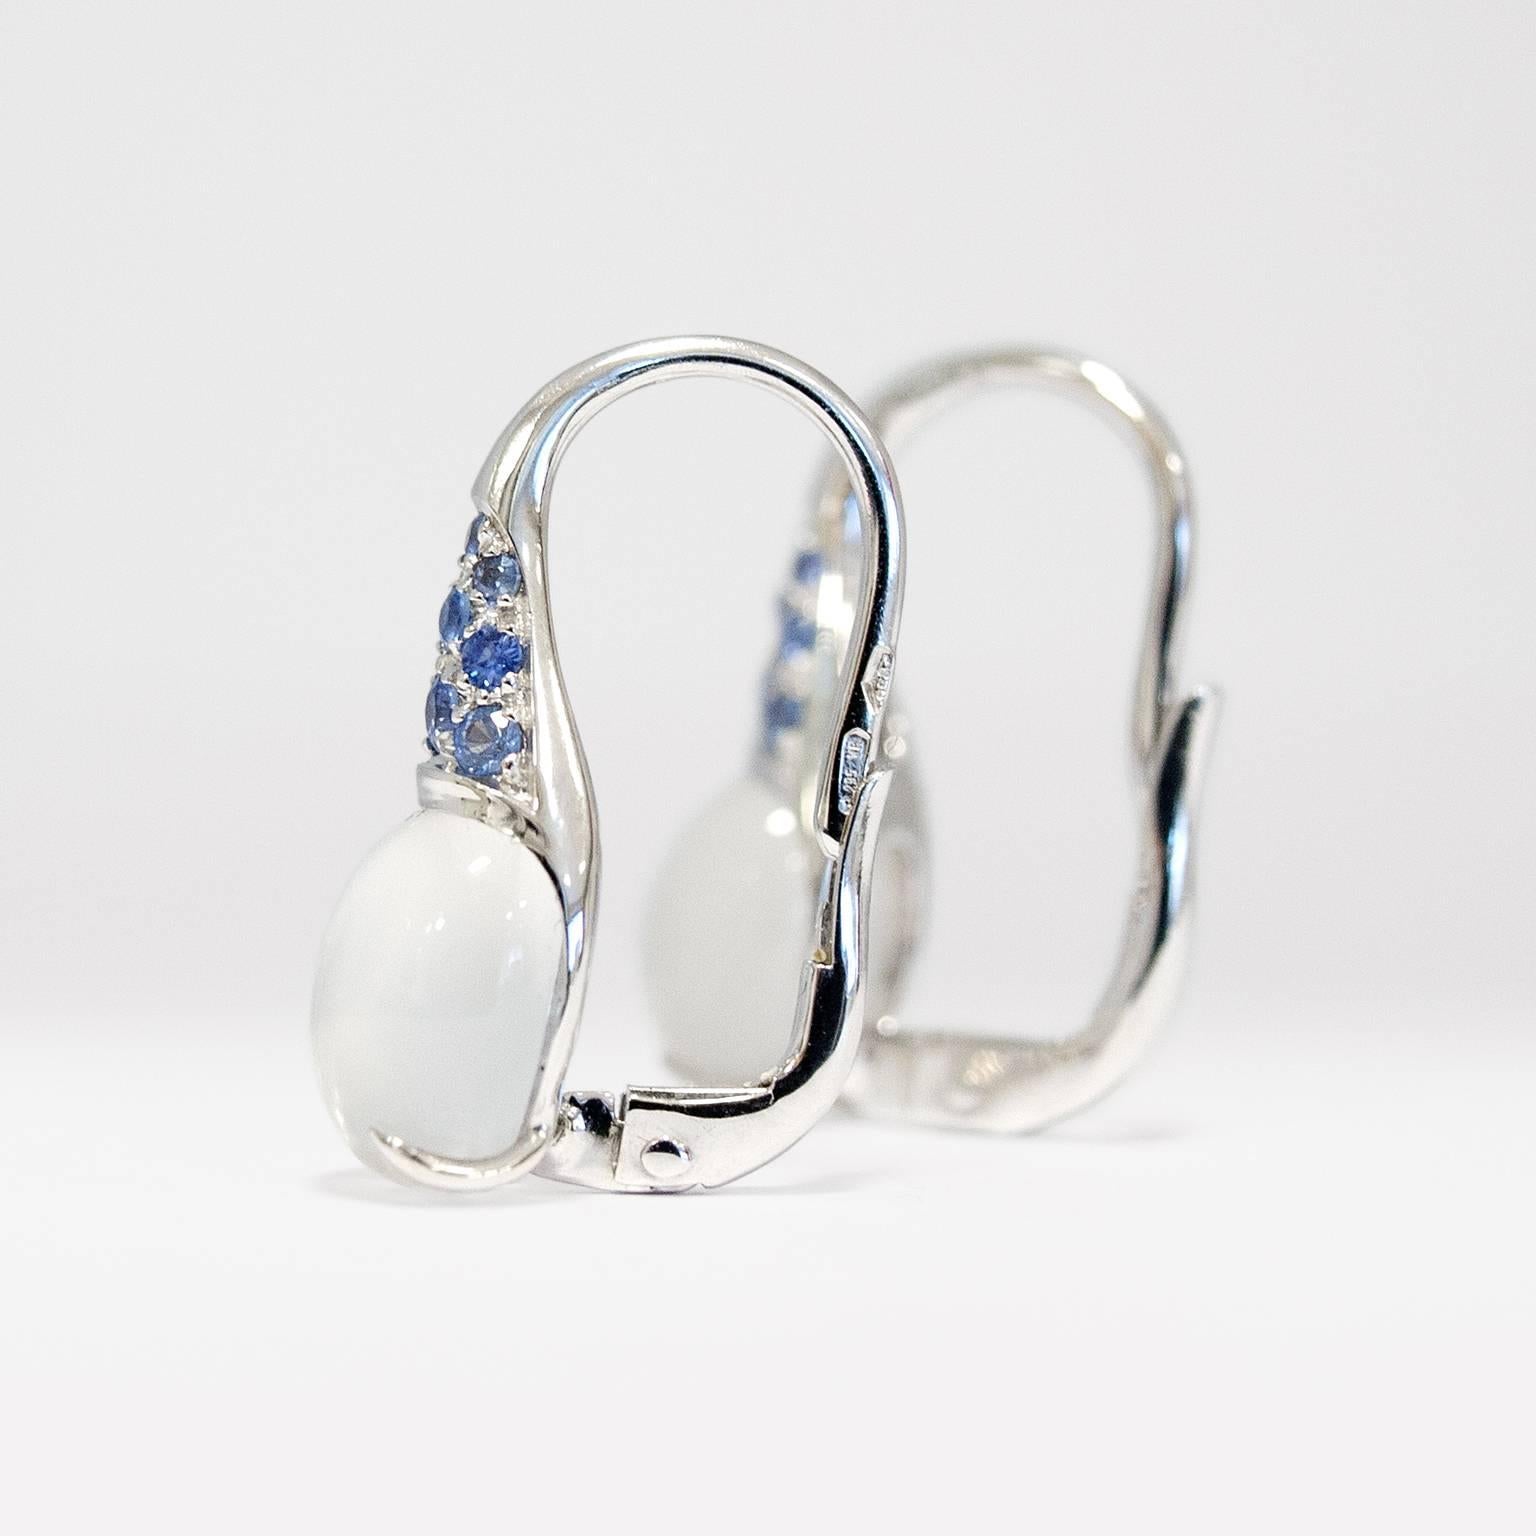 Boucles d'oreilles pendantes en or blanc 18 carats avec saphir bleu et pierre de lune en pierre gemme italienne 

Ces boucles d'oreilles sont composées de deux pierres de lune cabochon de 8x10 mm et de saphirs bleus clairs de 0,36 ct, avec des clips